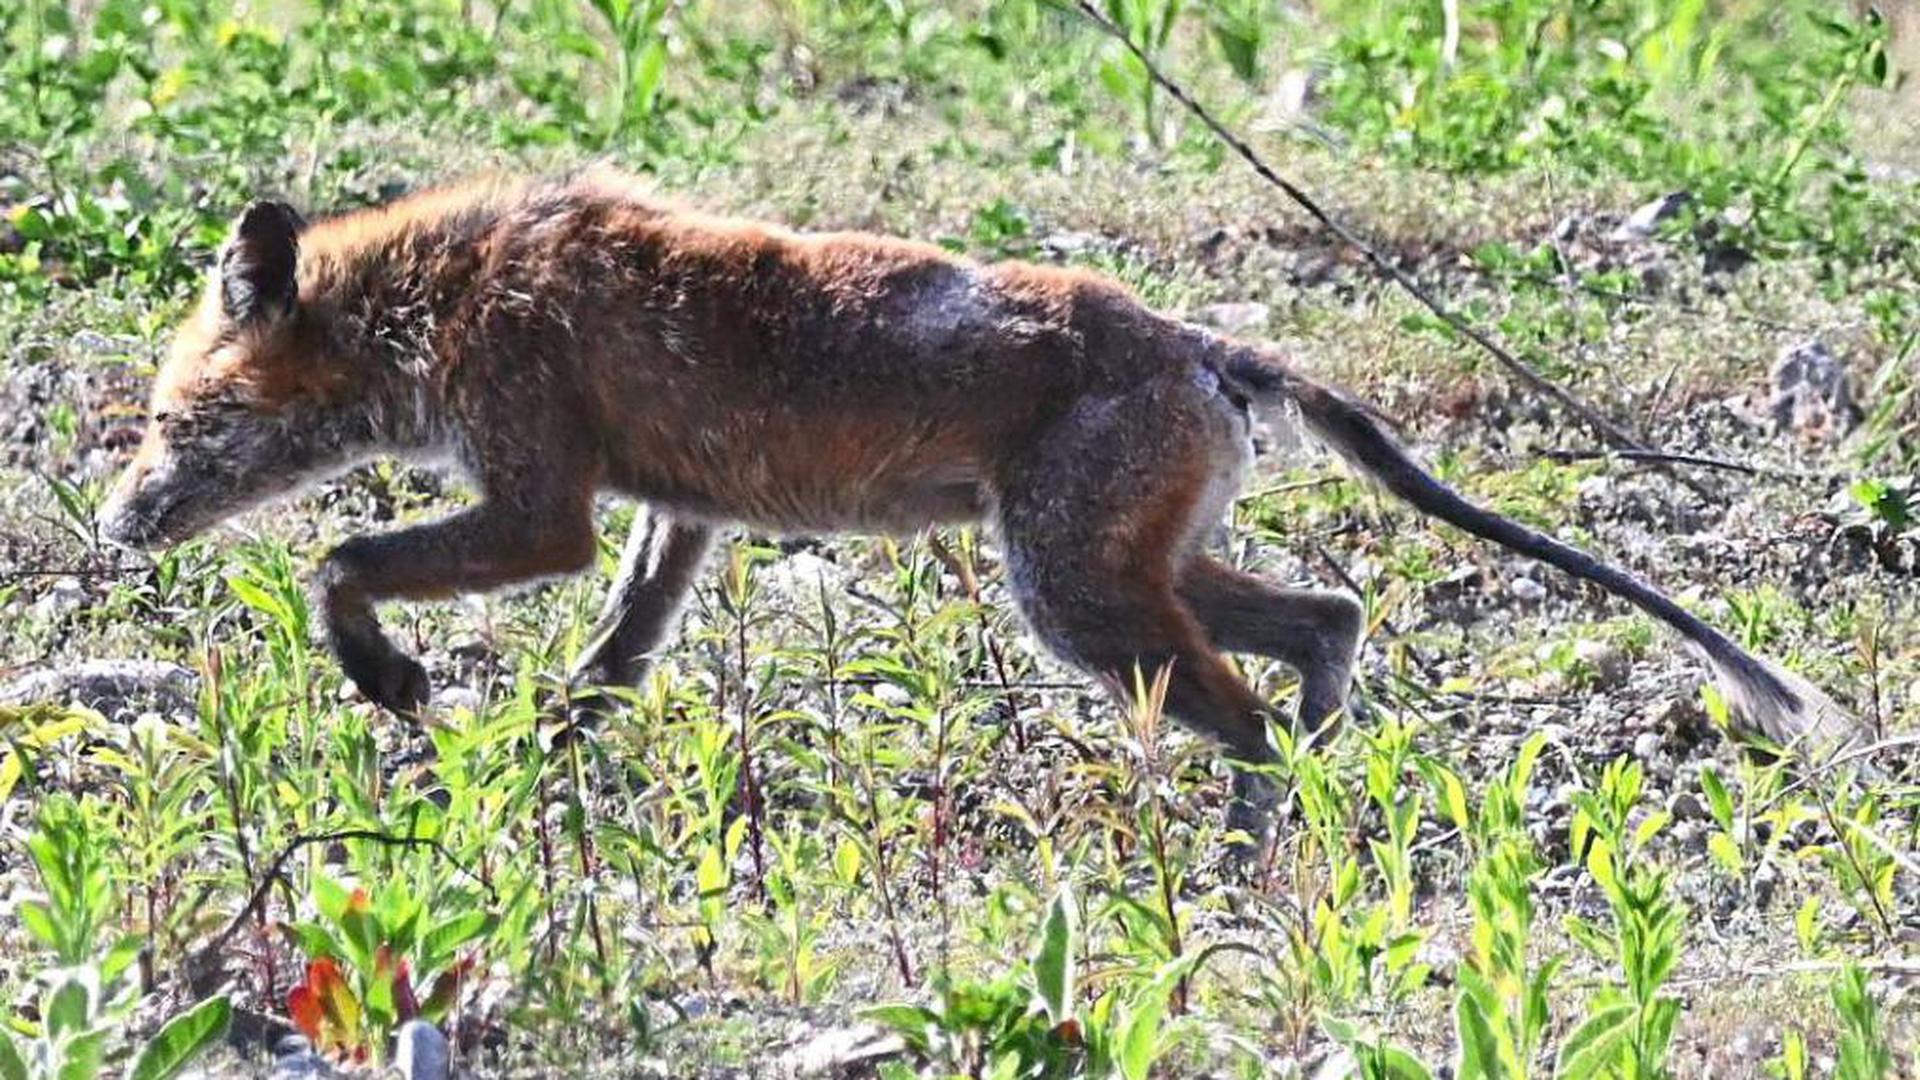 Kranker Fuchs im Kohlplattenschlag: Das Tier ist vermutlich an der Fuchsräude erkrankt, die oft zum Tod führen kann.